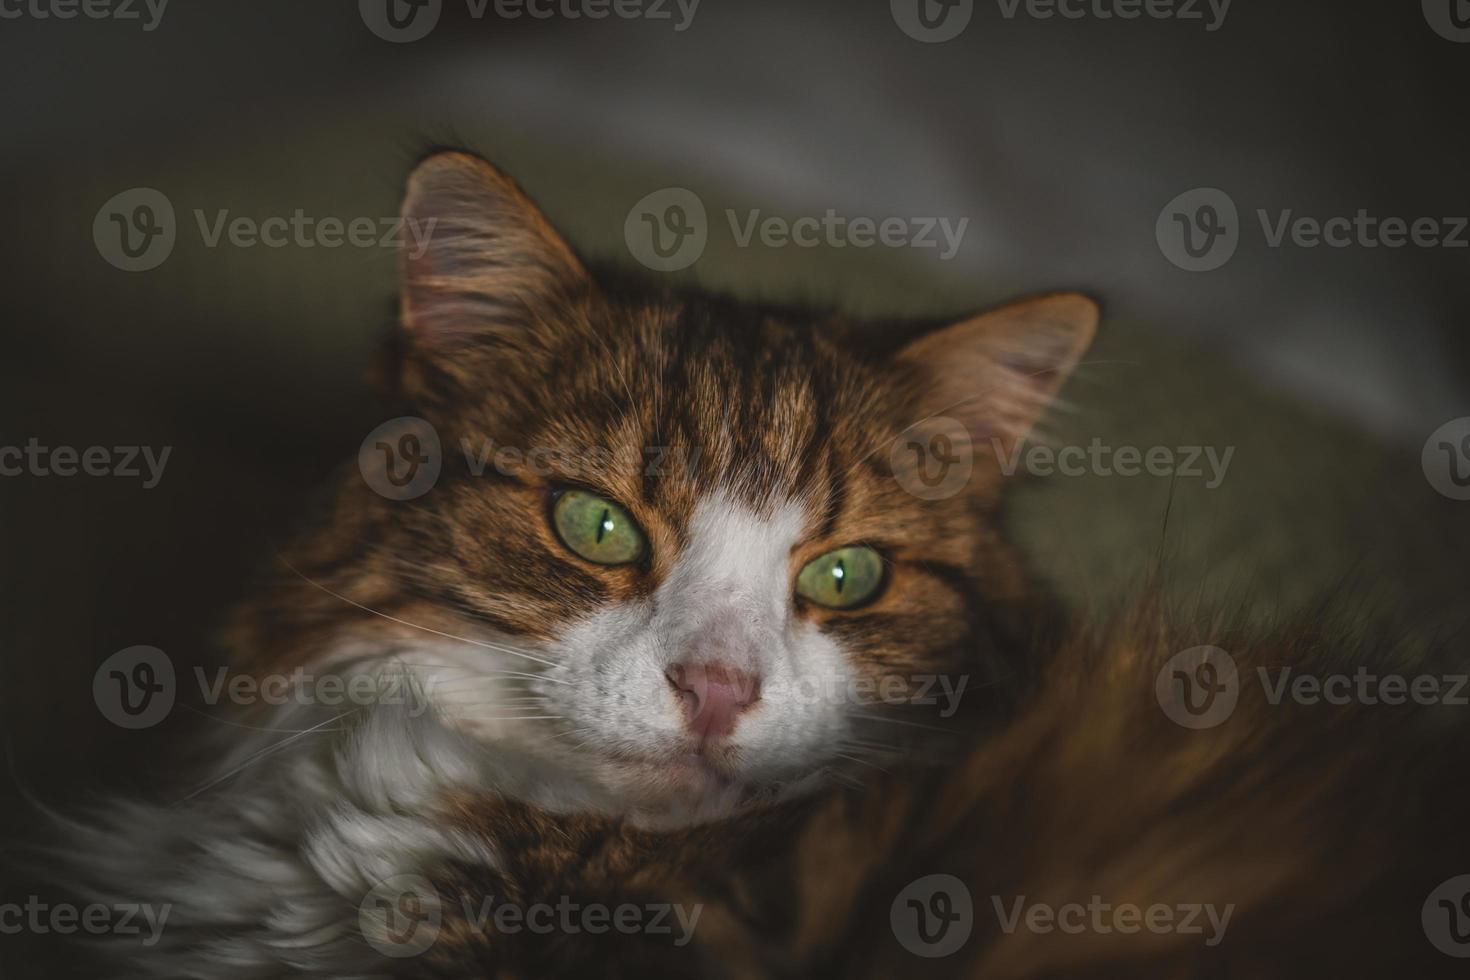 retrato de um gato com olhos verdes foto